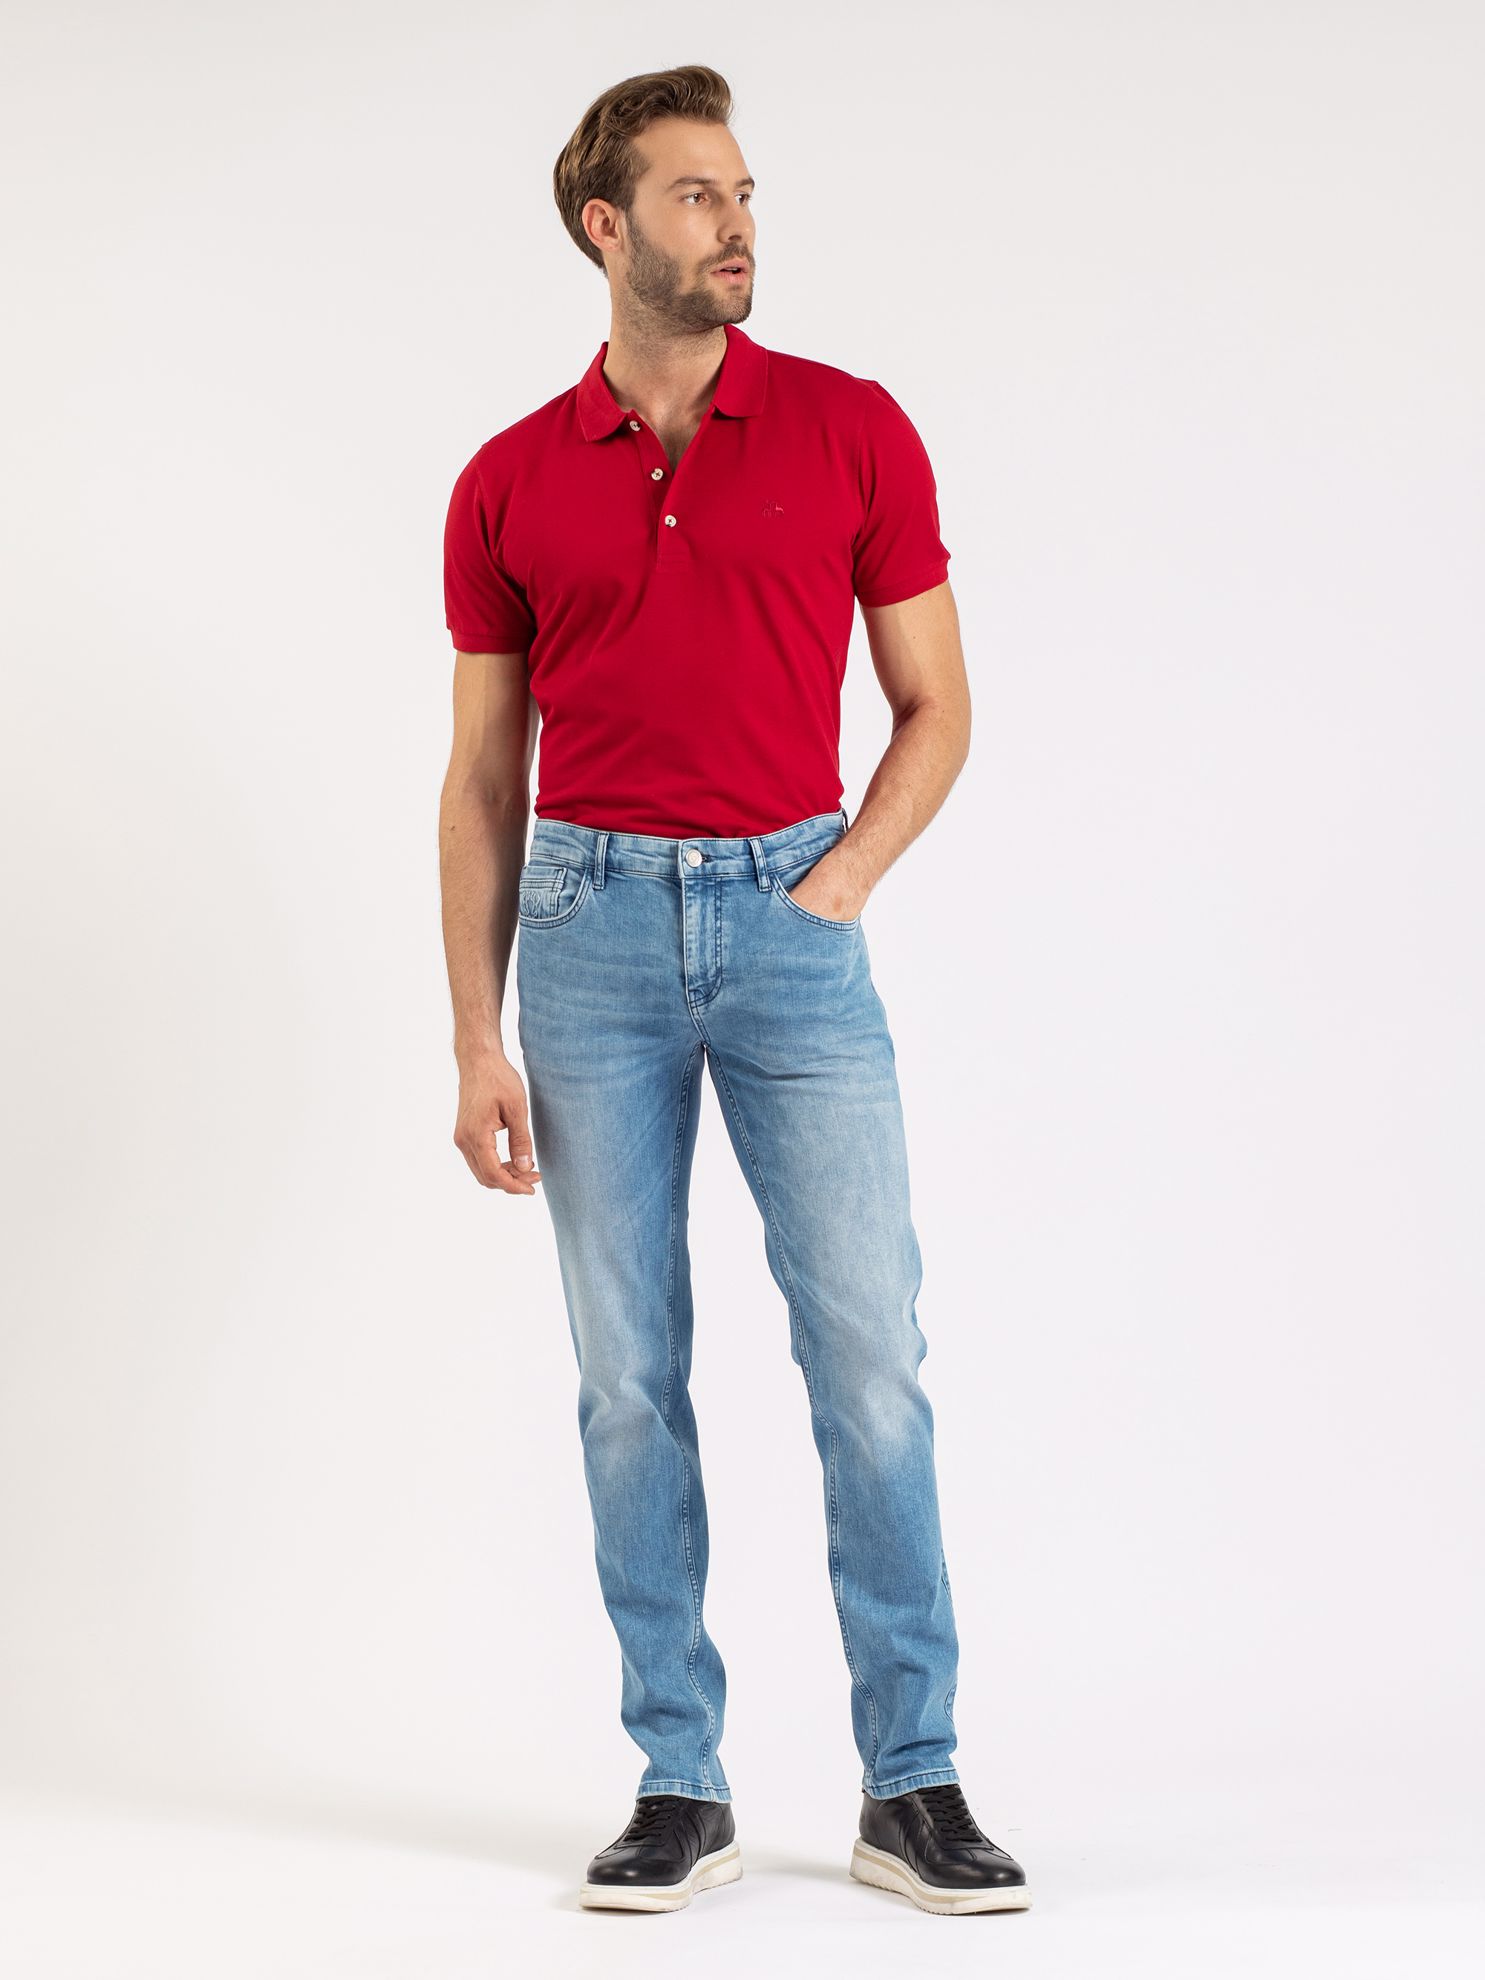 Karaca Erkek Slim Fit Polo Yaka Tişört-Bordo. ürün görseli